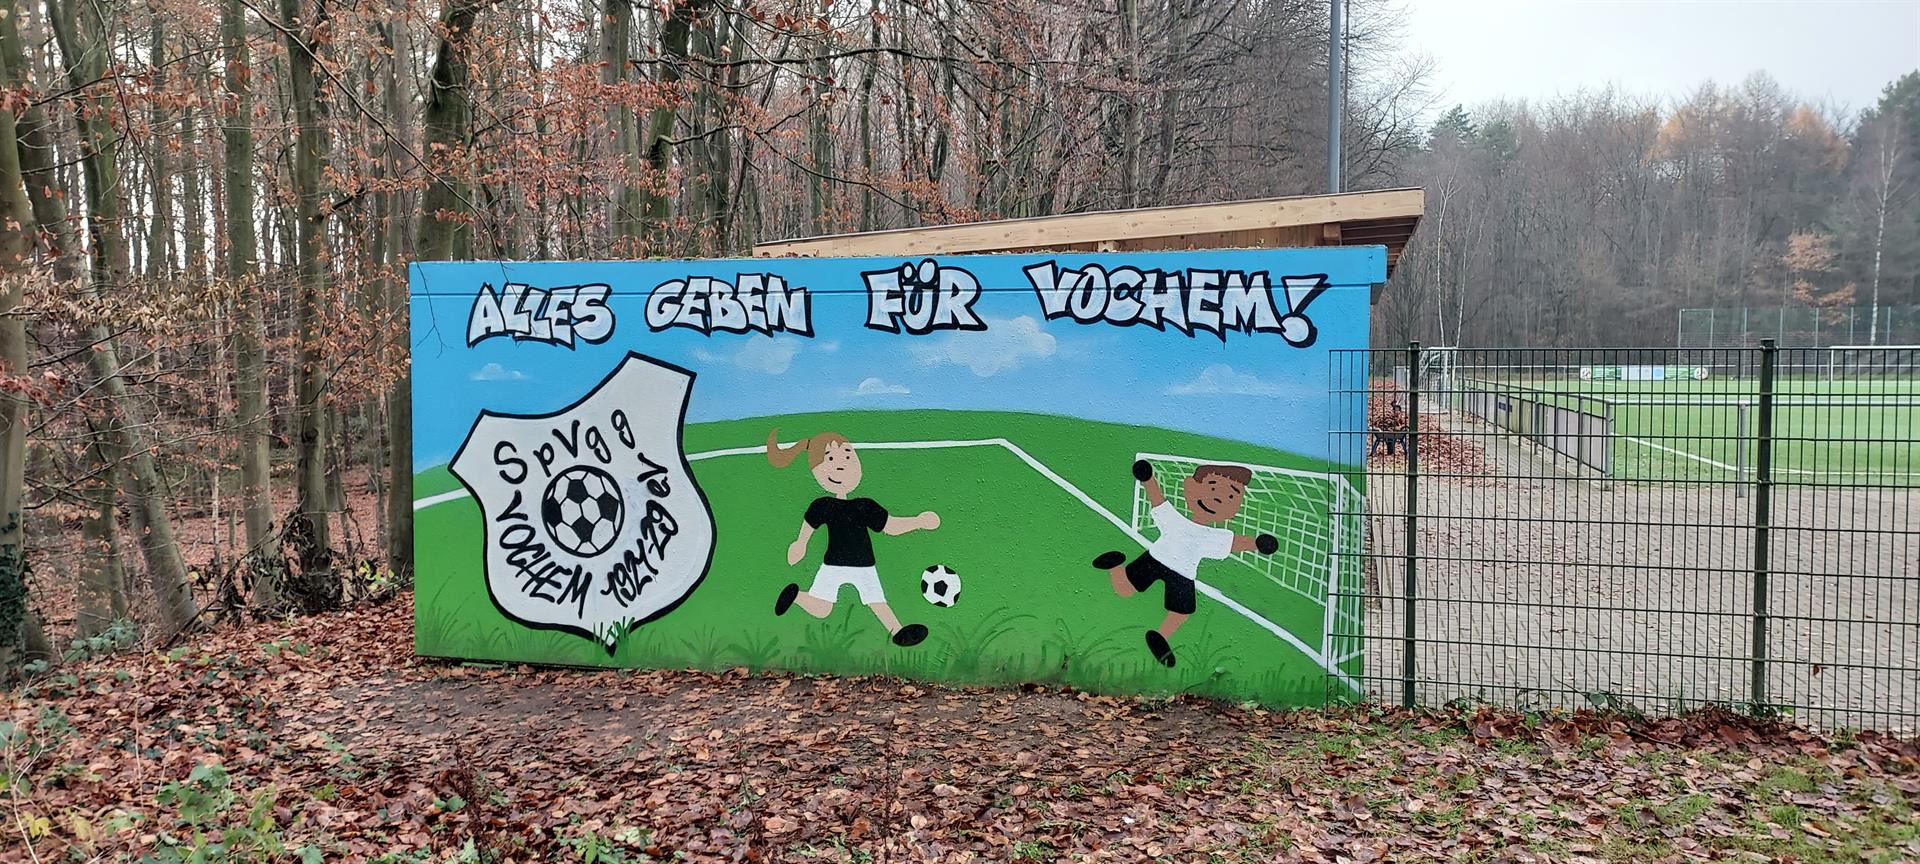 Sportplatz der Spielvereinigung Vochem e.V. 